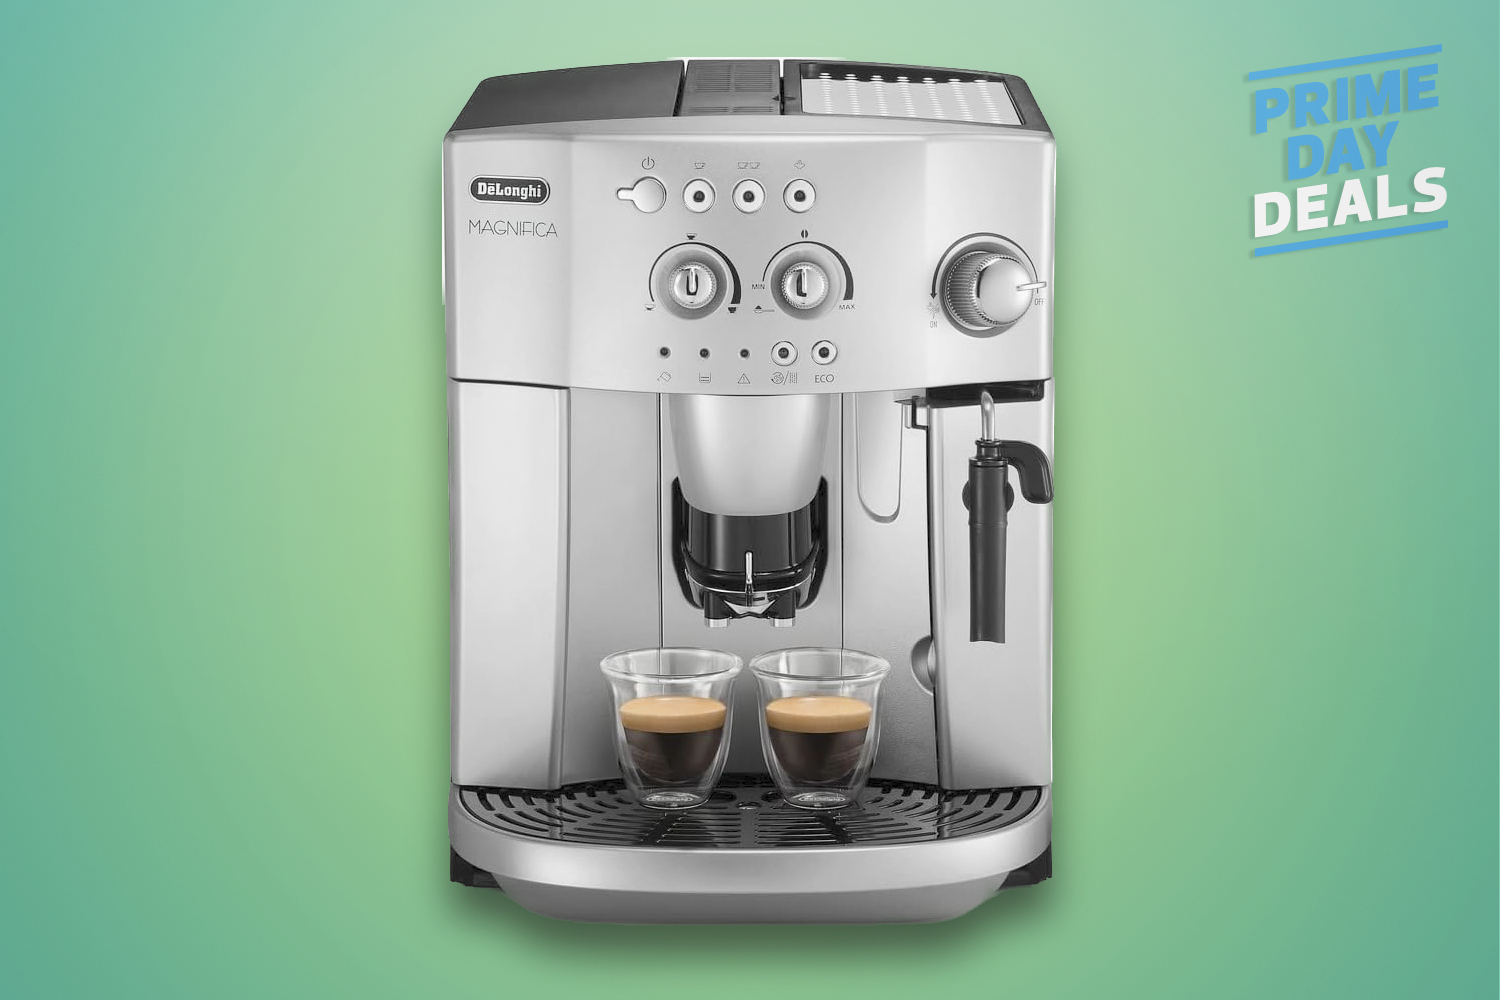 De'Longhi's Magnifica espresso machine is 40% off for Prime Day | Stuff